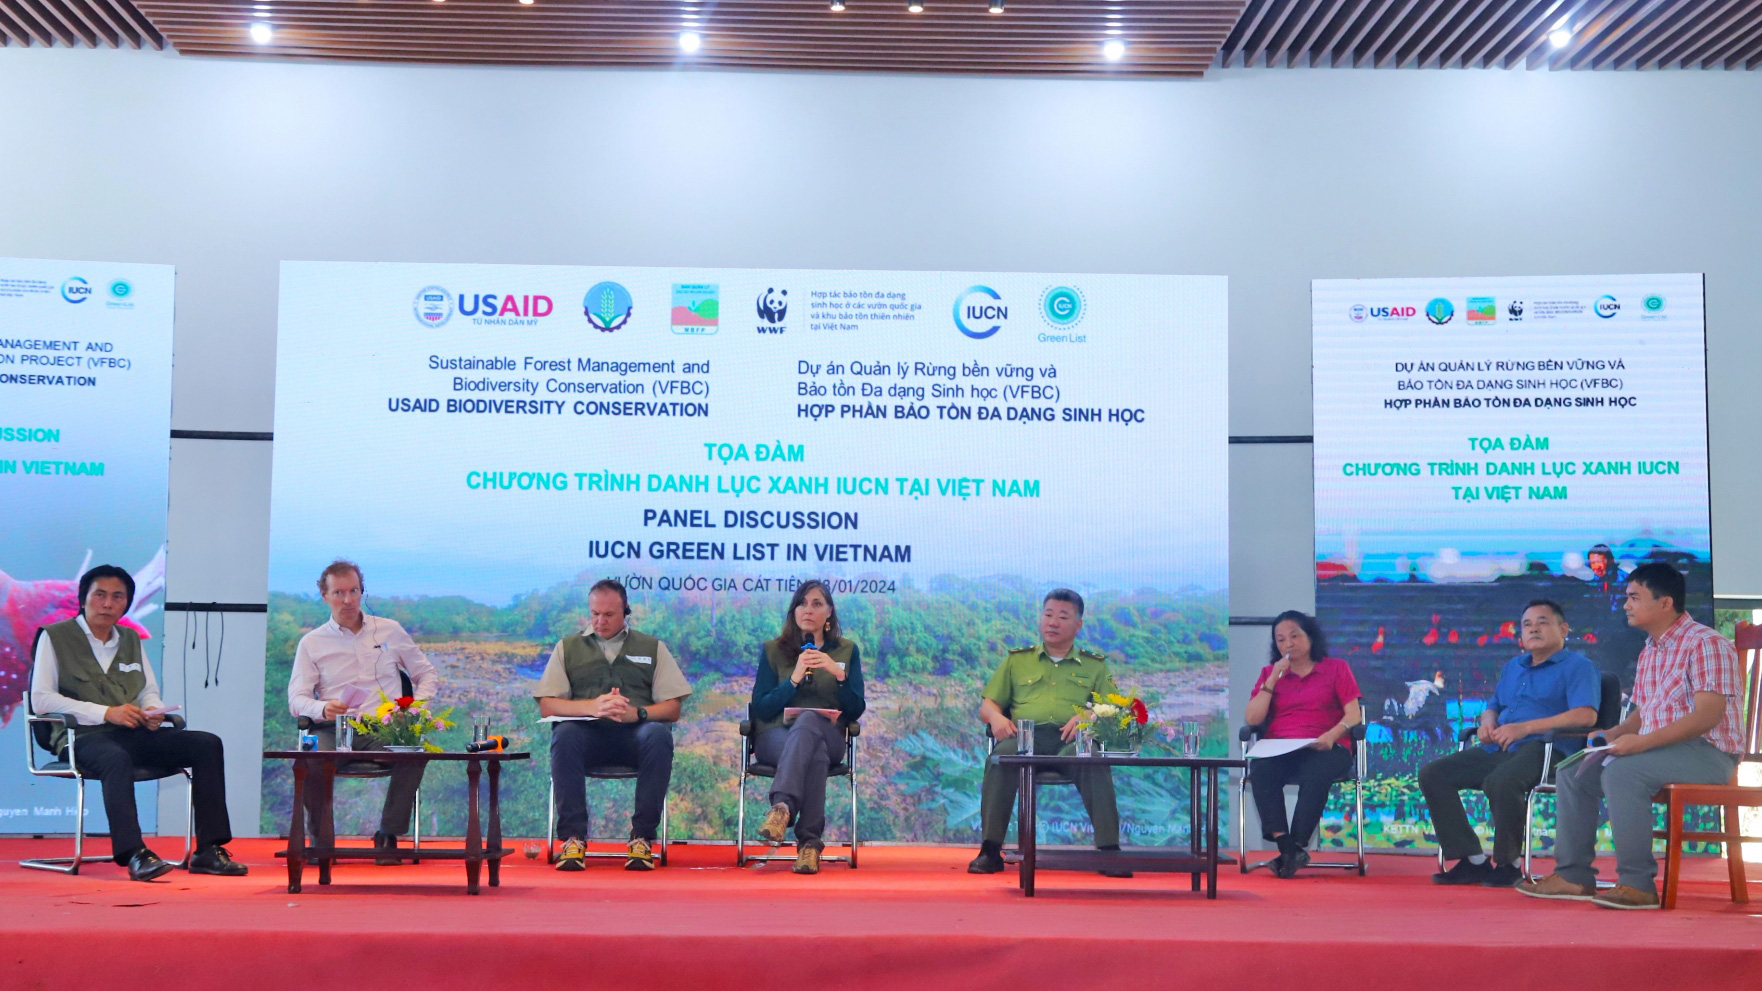 Các chuyên gia nước ngoài và Việt Nam cùng trao đổi về quá trình triển khai các phần việc bảo tồn thiên nhiên để đạt chứng nhận Danh lục xanh